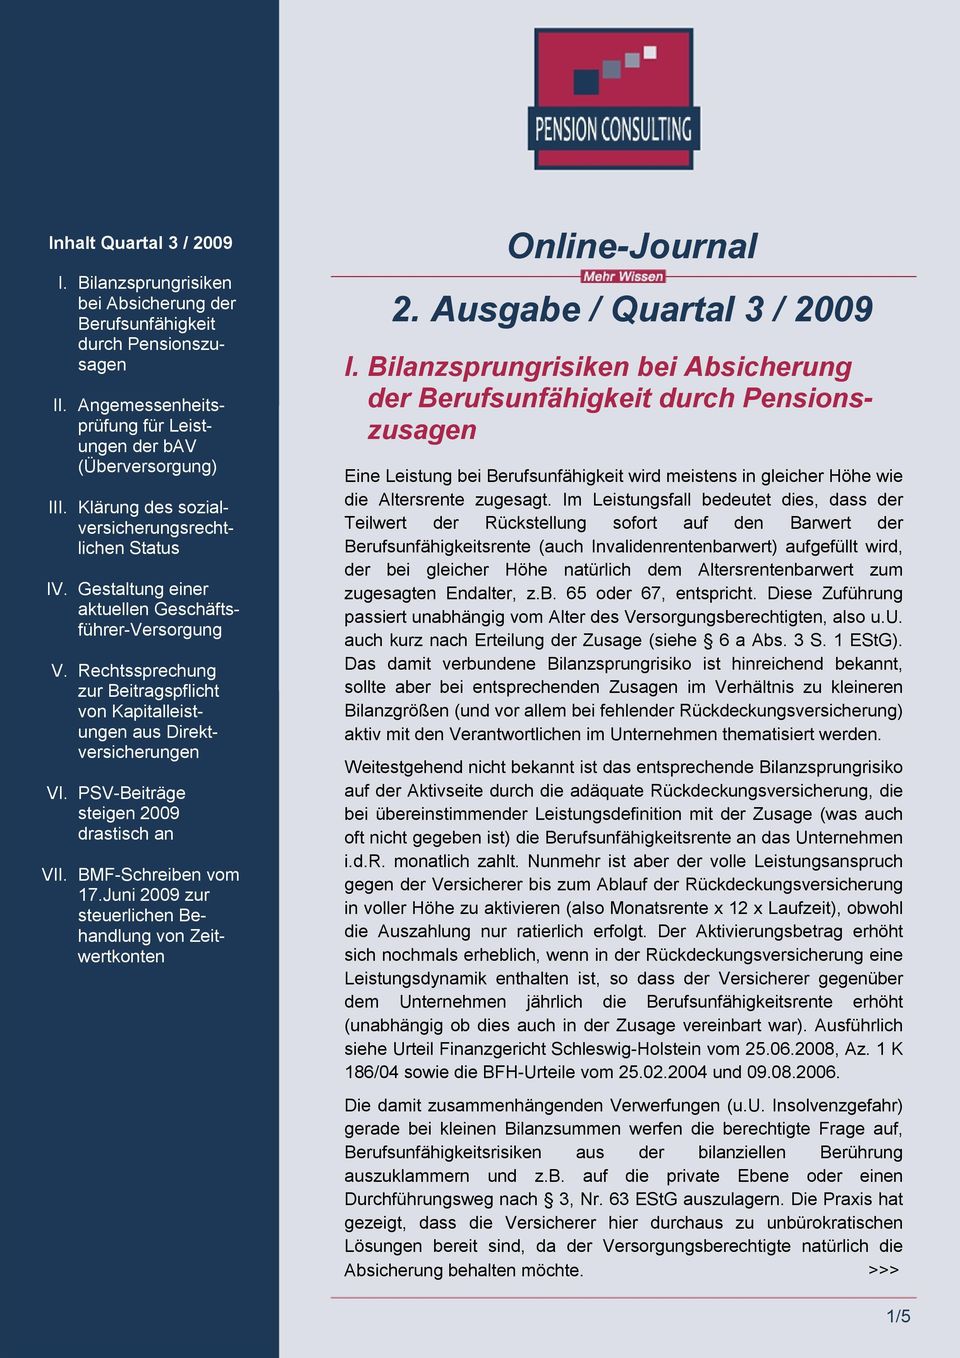 PSV-Beiträge steigen 2009 drastisch an VII. BMF-Schreiben vom 17.Juni 2009 zur steuerlichen Behandlung von Zeitwertkonten Online-Journal 2. Ausgabe / Quartal 3 / 2009 I.